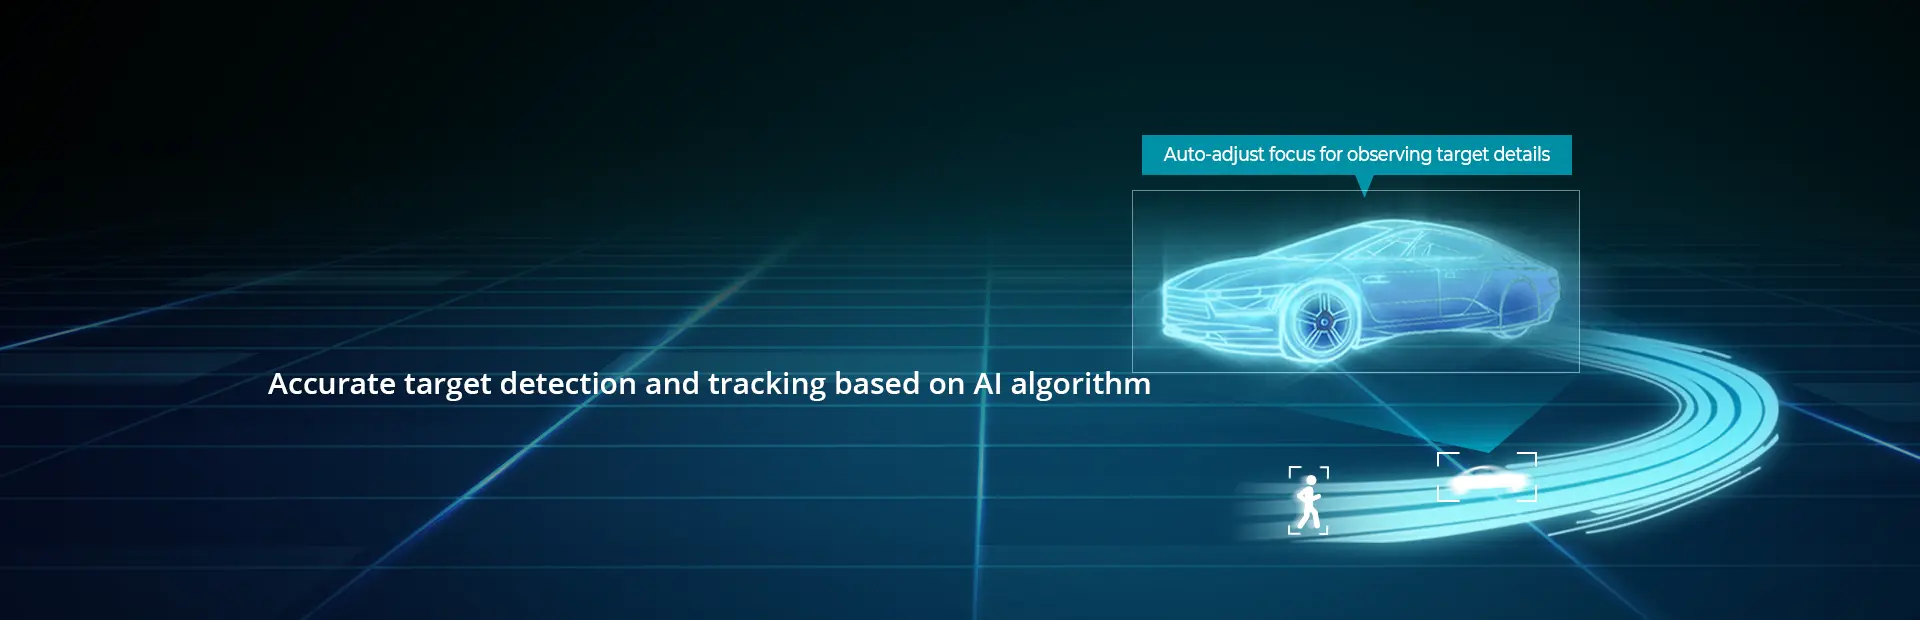 Detección y seguimiento precisos de objetos basados en algoritmos de IA